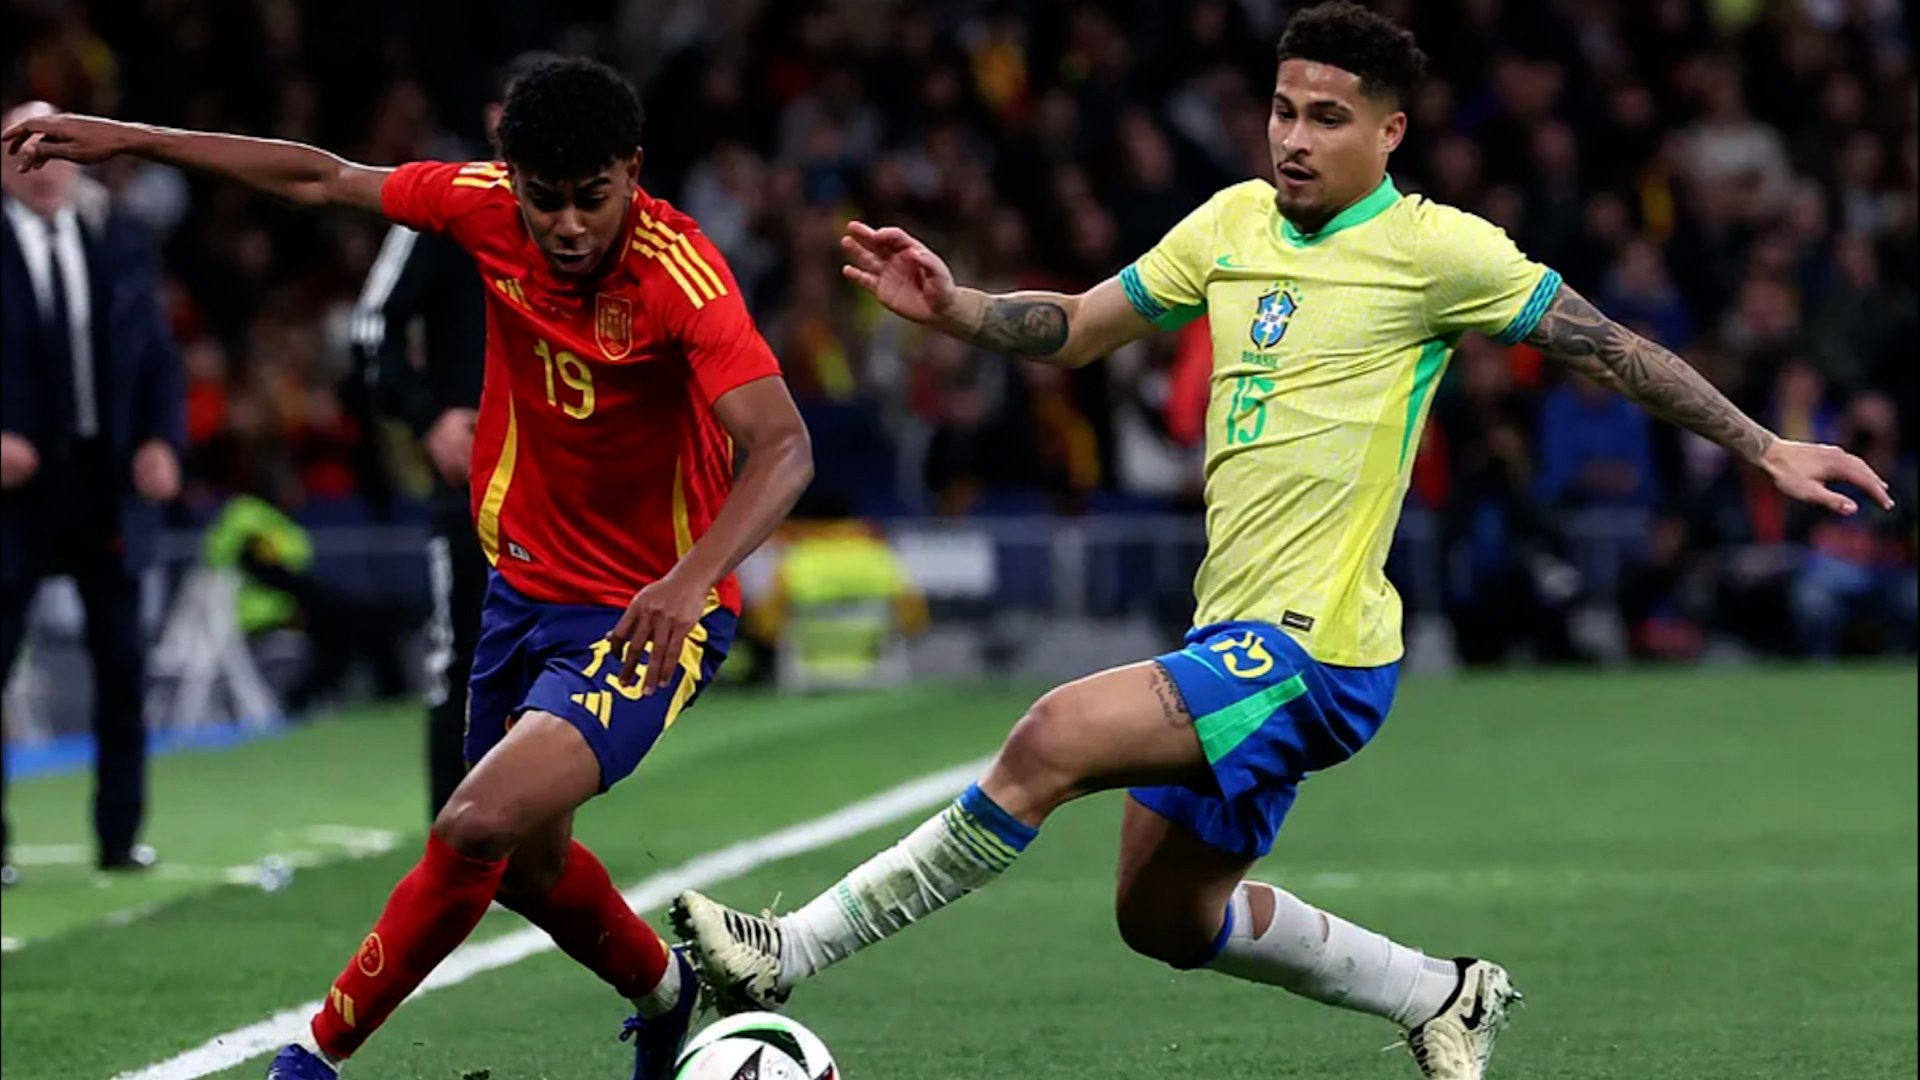 Lamine Yamal eclipsa a Vinicius en el partido de Espaa contra Brasil: "Puede llegar muy alto"